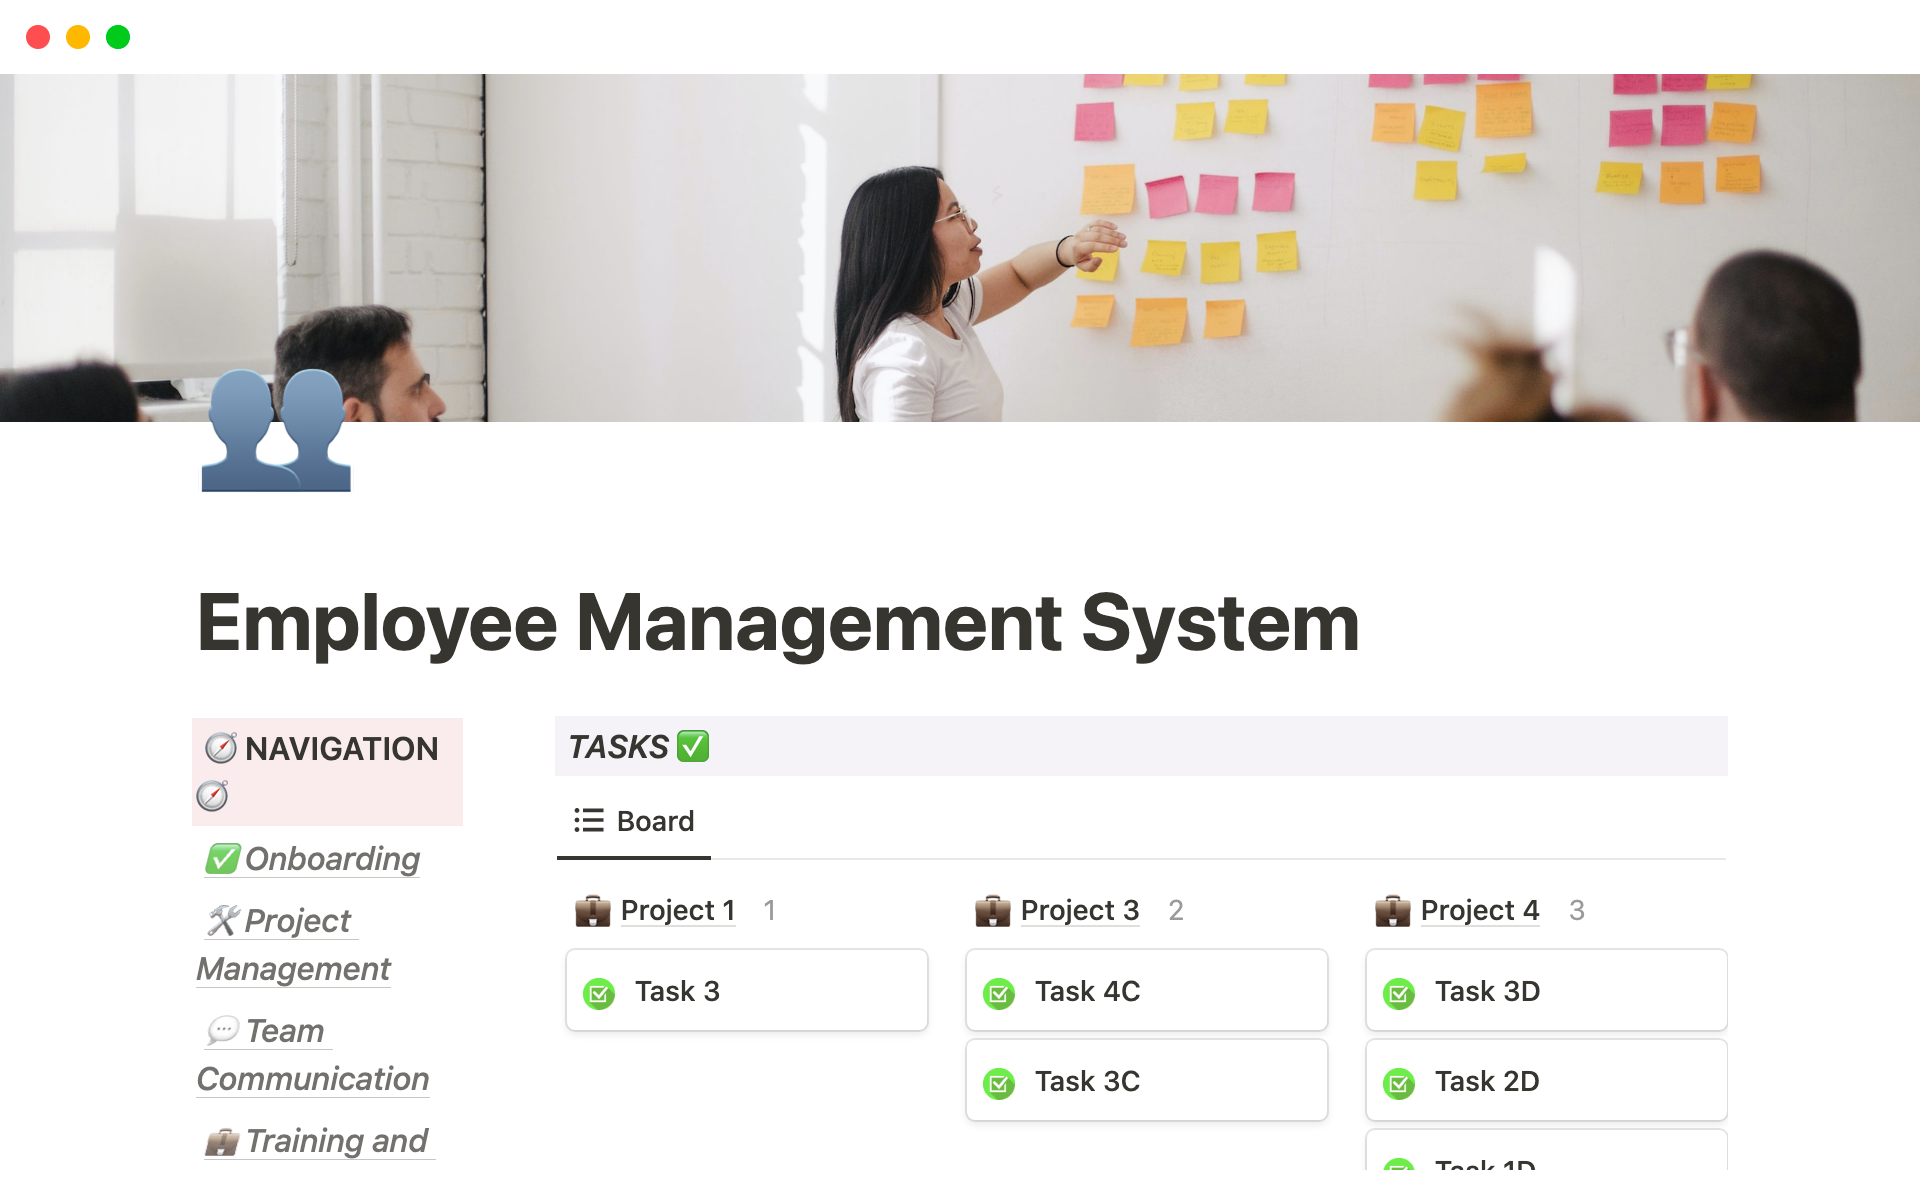 Uma prévia do modelo para Employee Management System